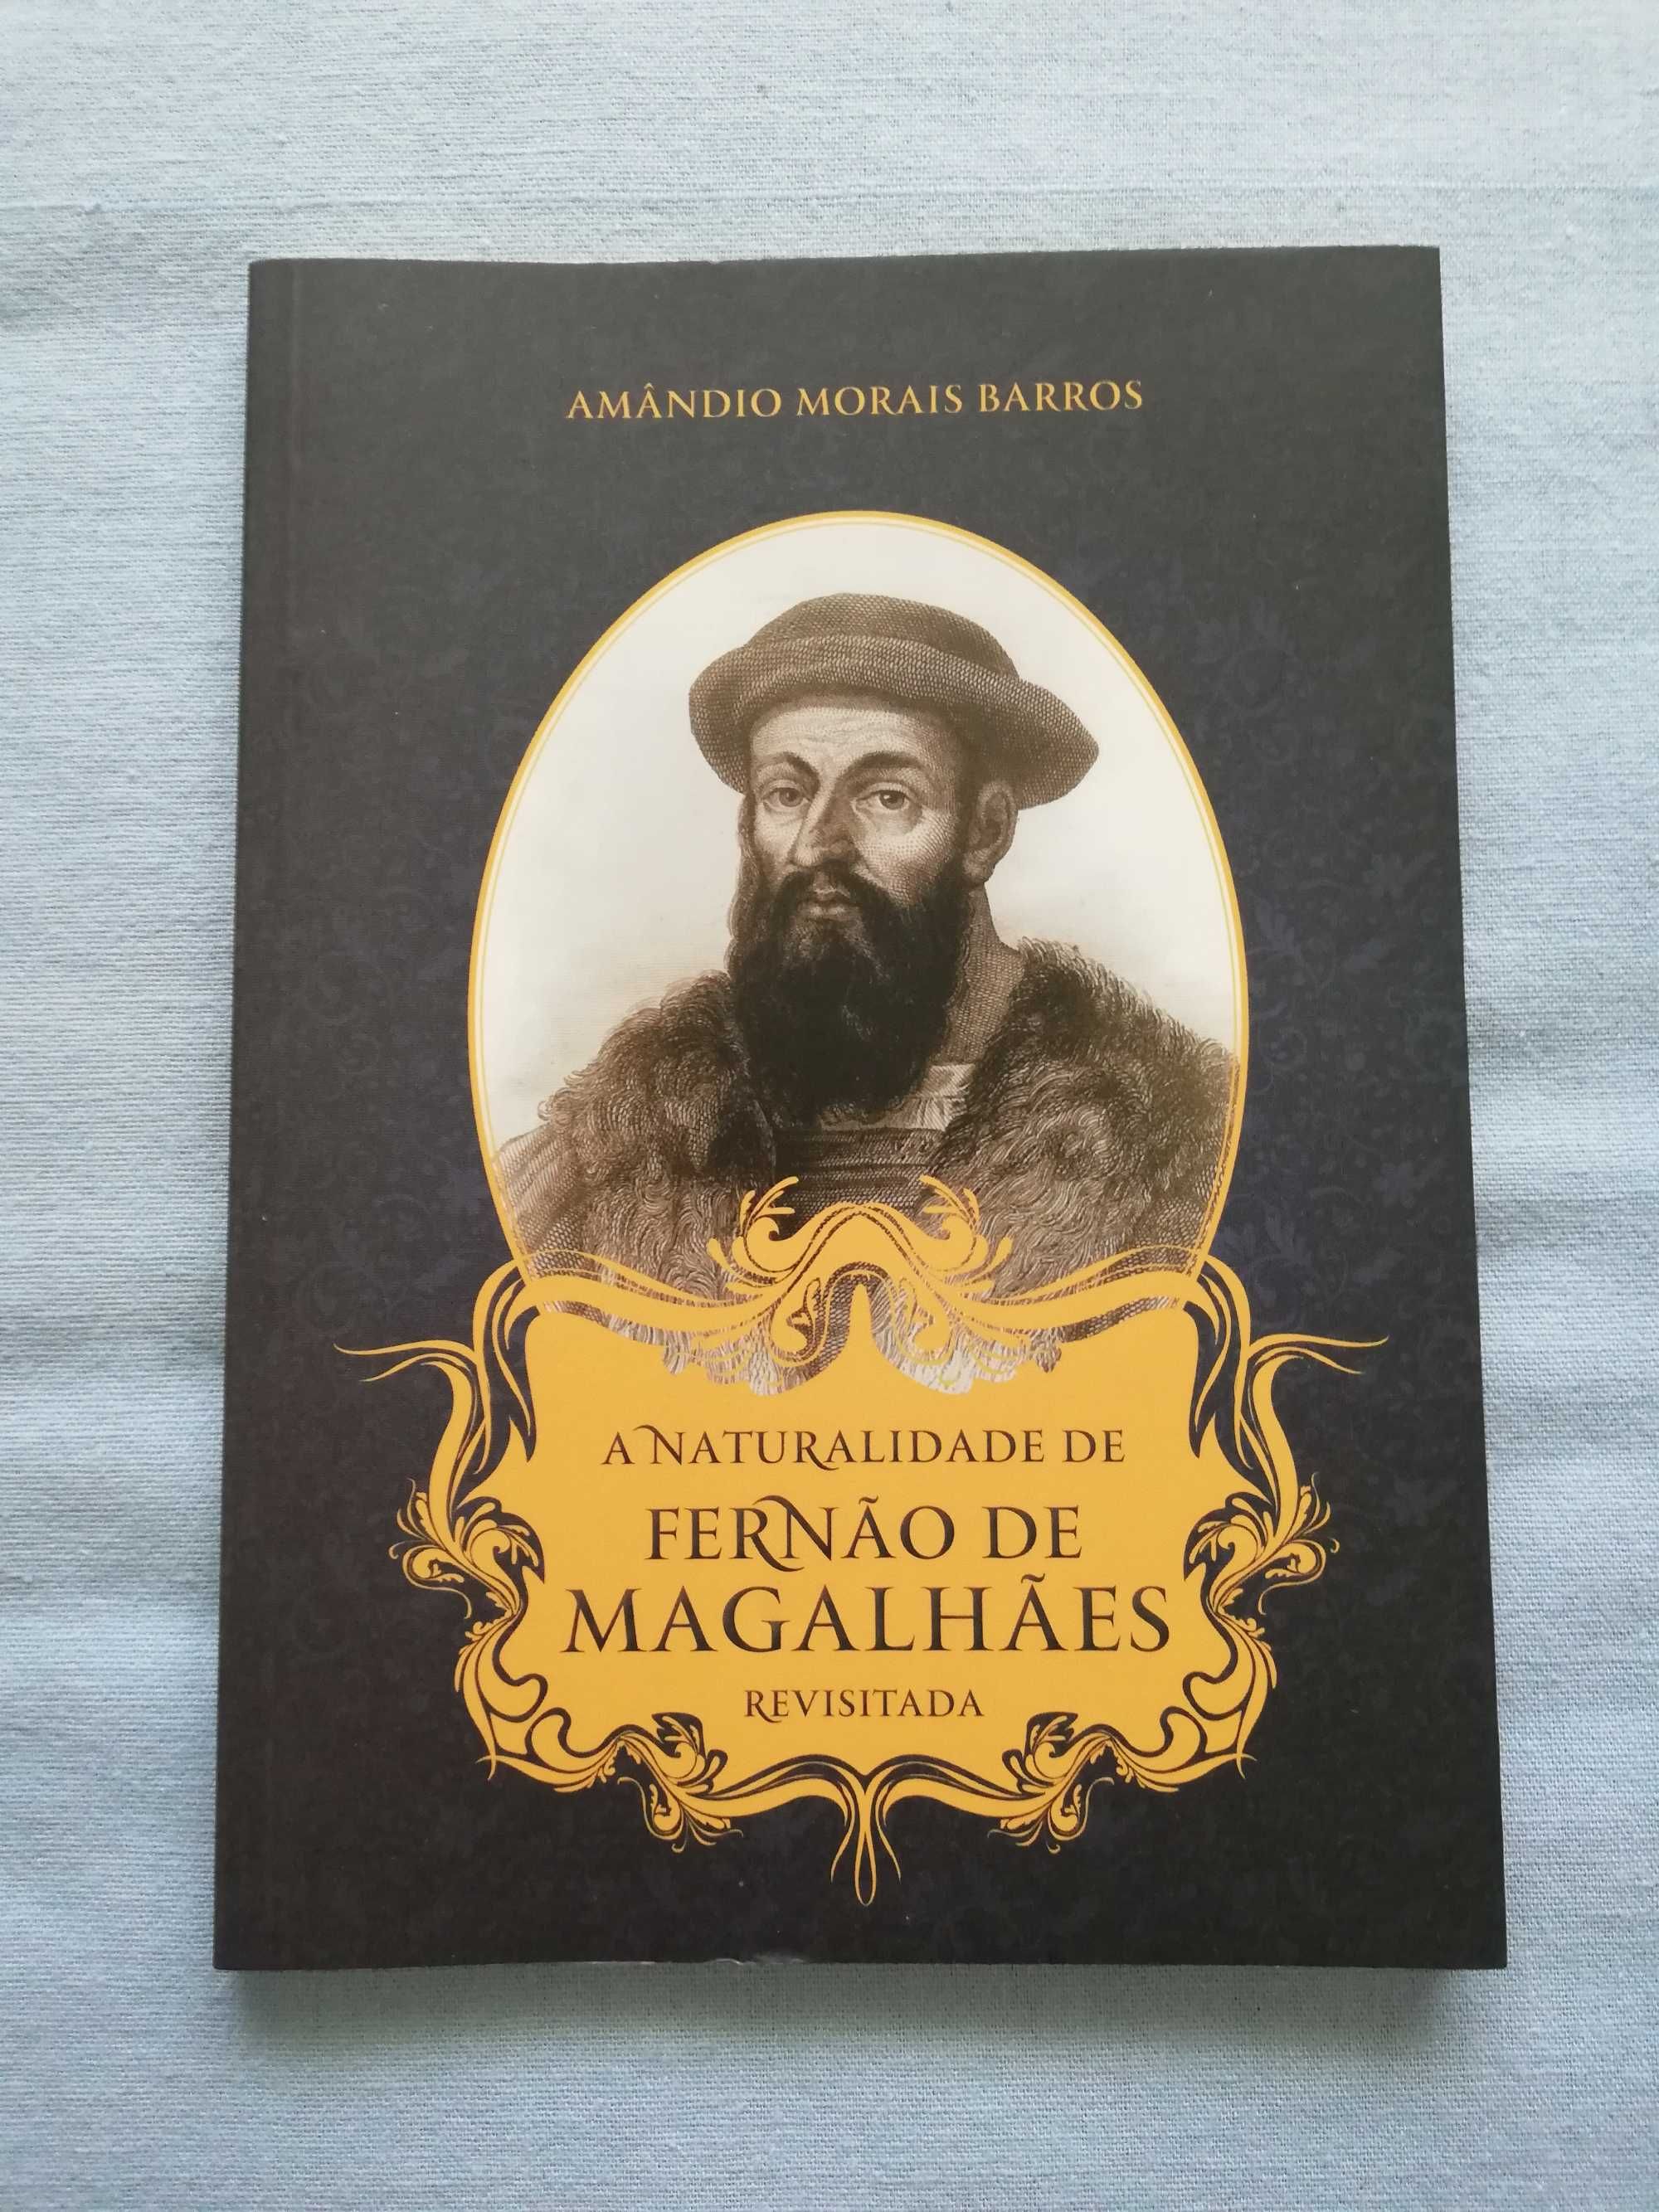 Livro "A Naturalidade de Fernão de Magalhães"
de Amândio Morais Barros